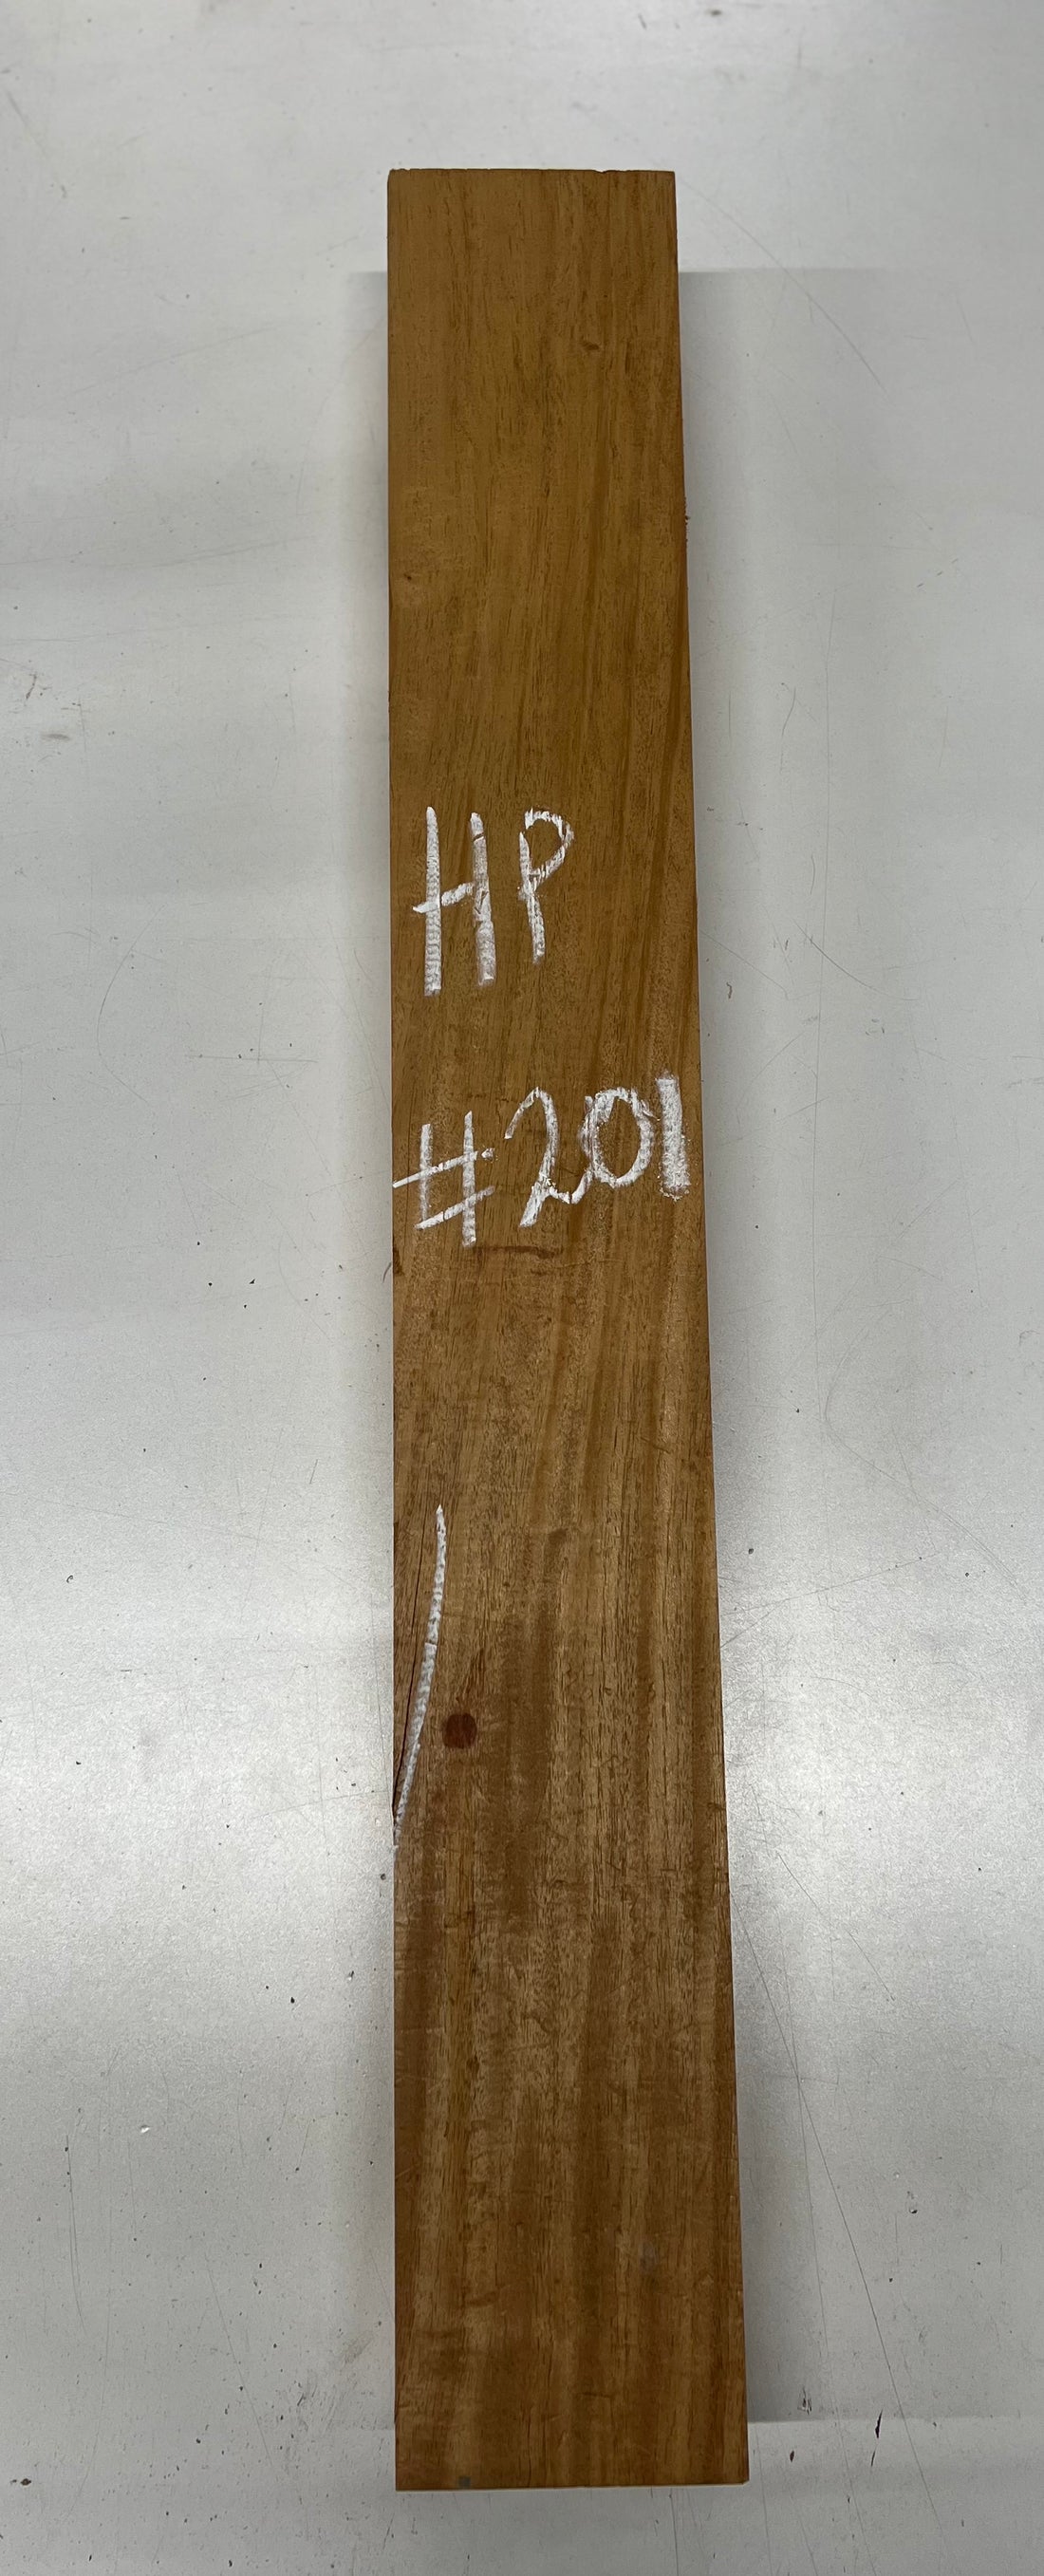 Honduran Mahogany Lumber Board Wood Blank 33&quot;x 4-3/8&quot;x 3&quot; 